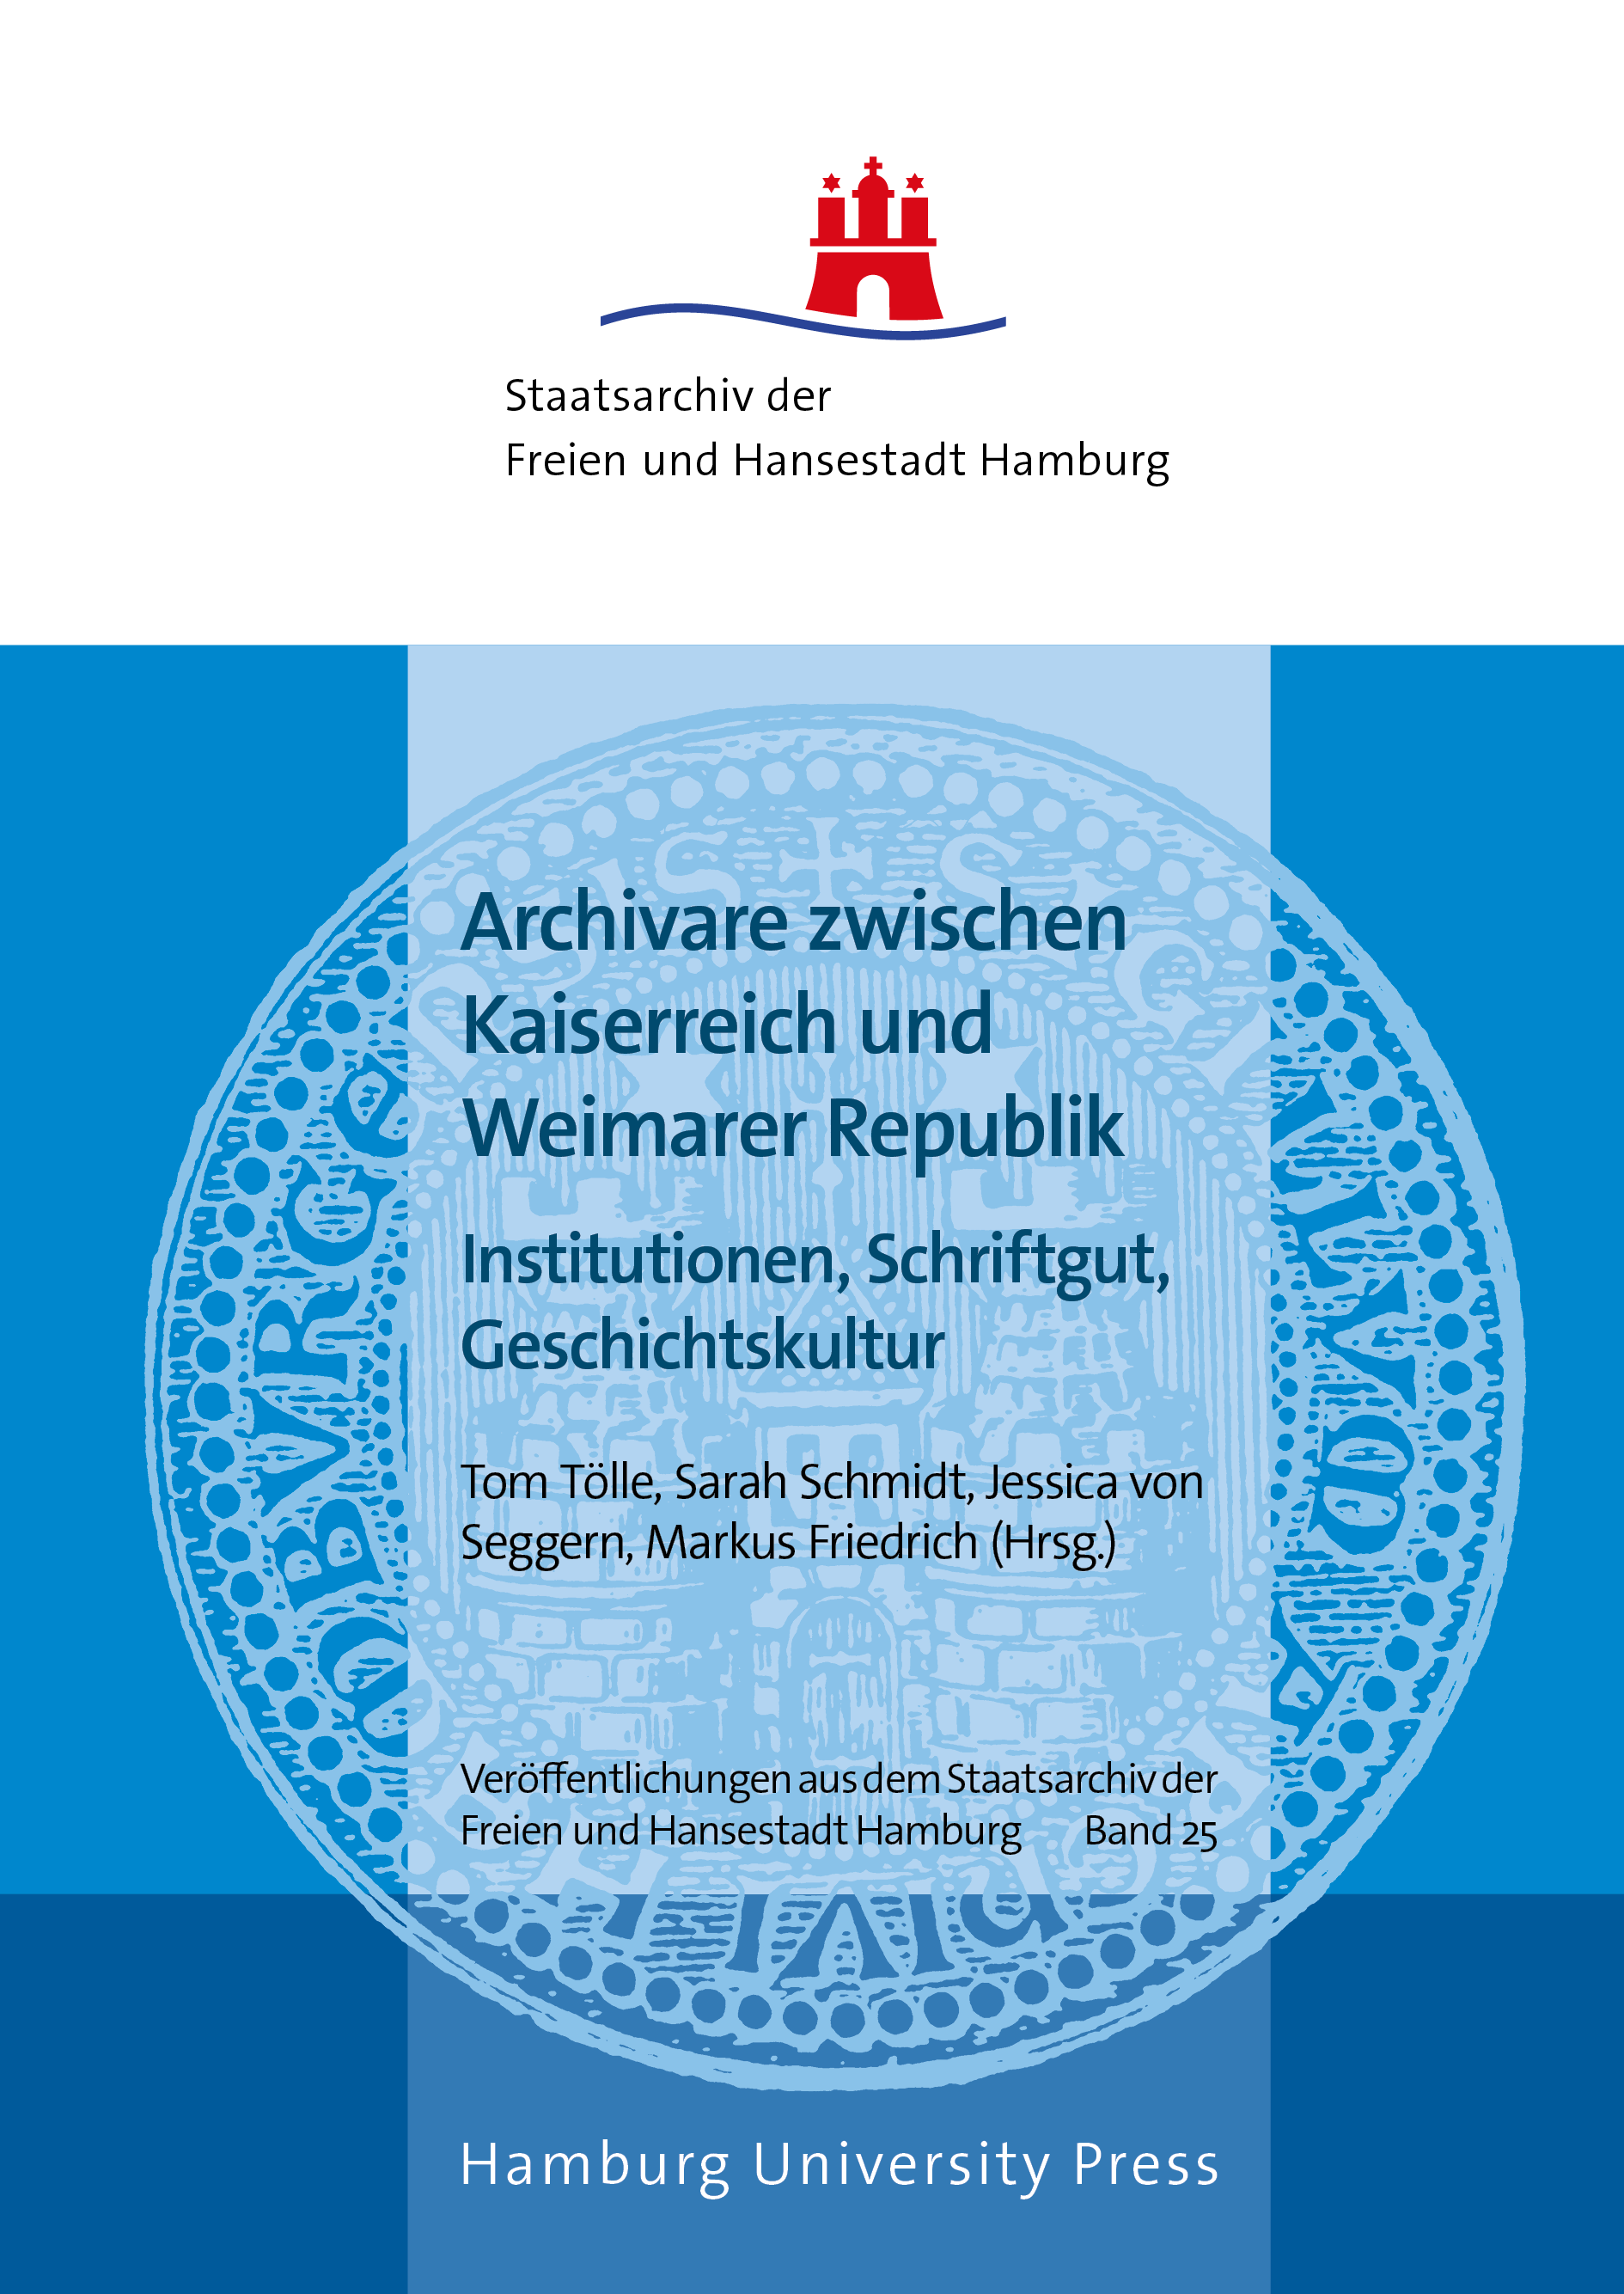 Cover: Archivare zwischen Kaiserreich und Weimarer Republik, edited by Tölle et al.